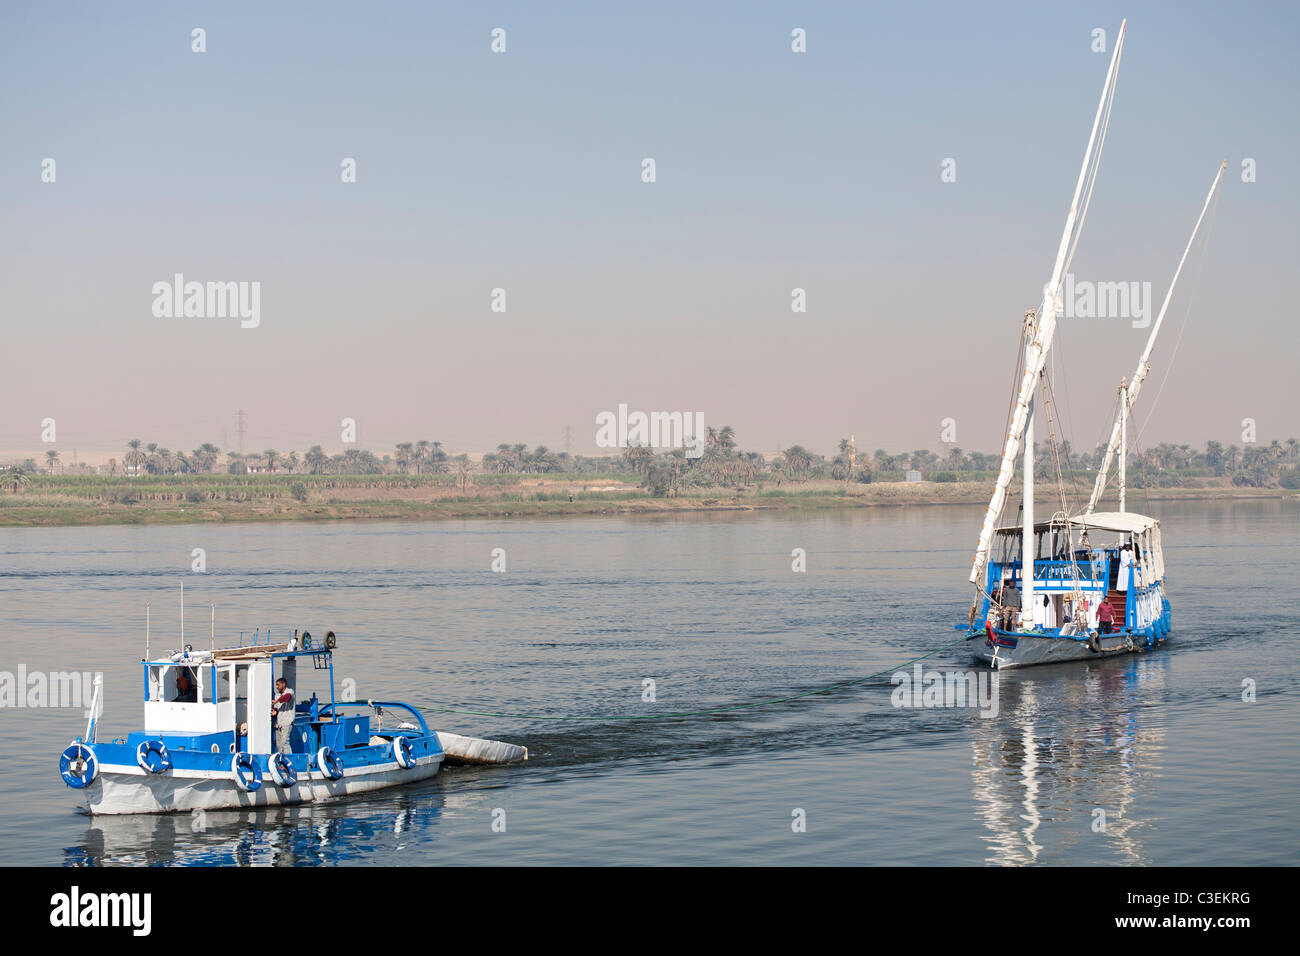 Una dahabiya siendo remolcado por embarcaciones pequeñas a sus amarras en las orillas del río Nilo en aguas tranquilas, Egipto, África Foto de stock